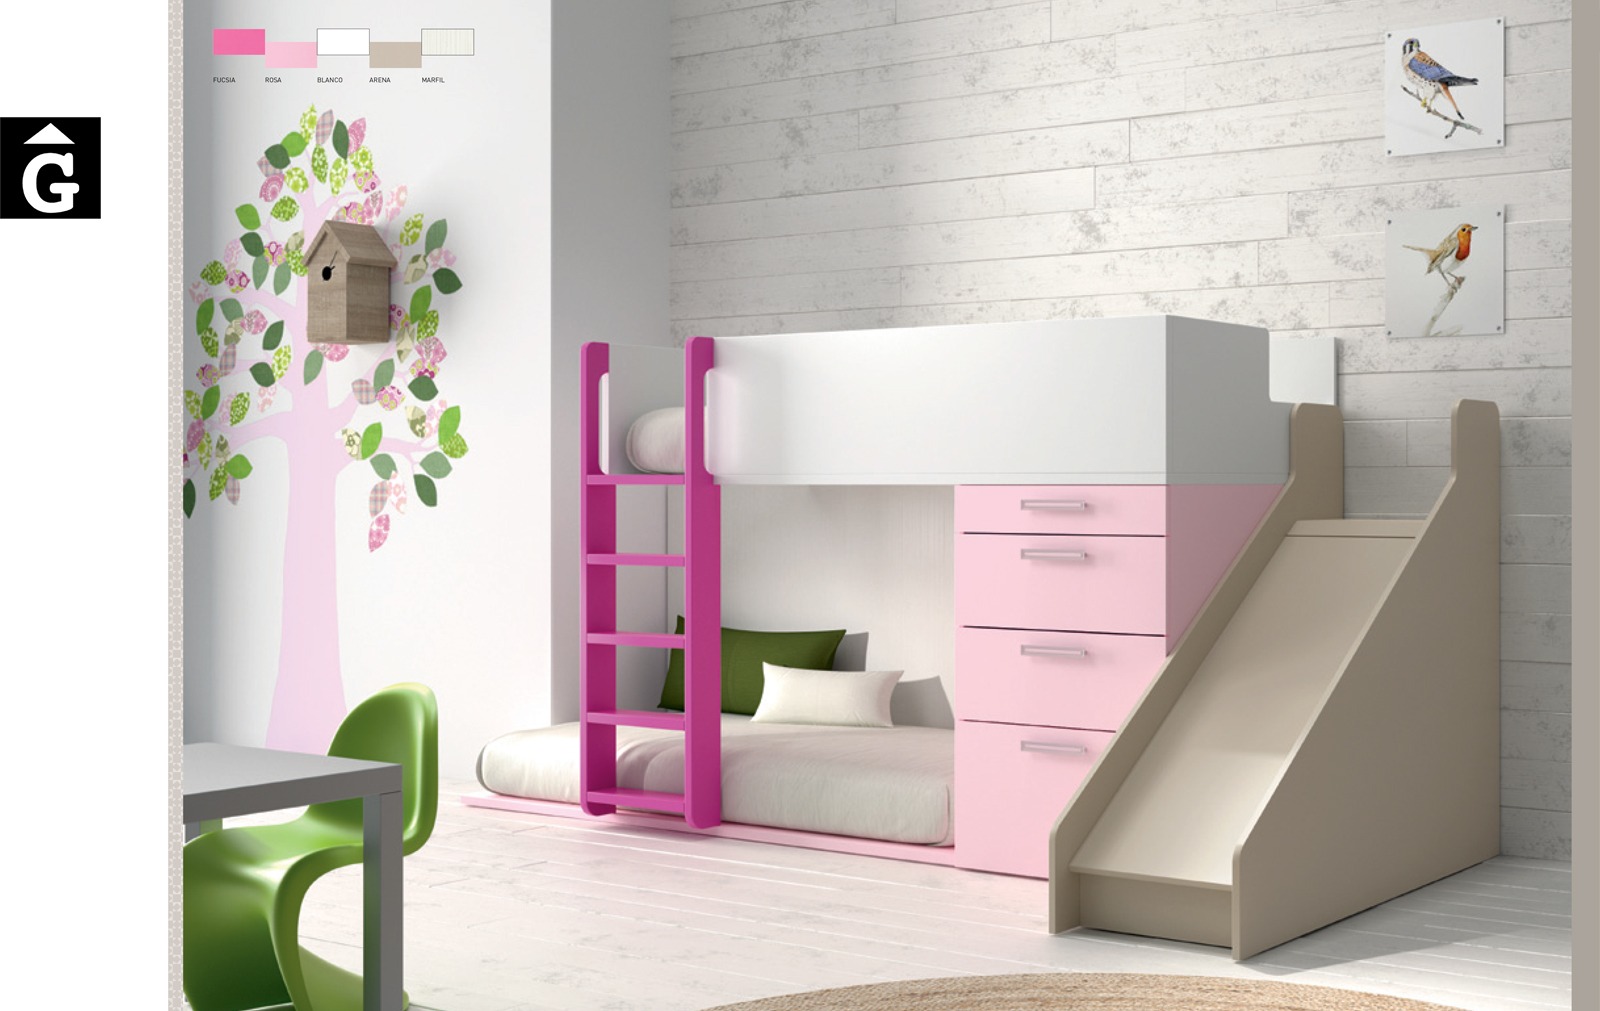 Llitera tobogan rosa-infinity-muebles-jjp-by-mobles-gifreu-llits-de-nado-infantil-juvenil-singel-disseny-actual-qualitat